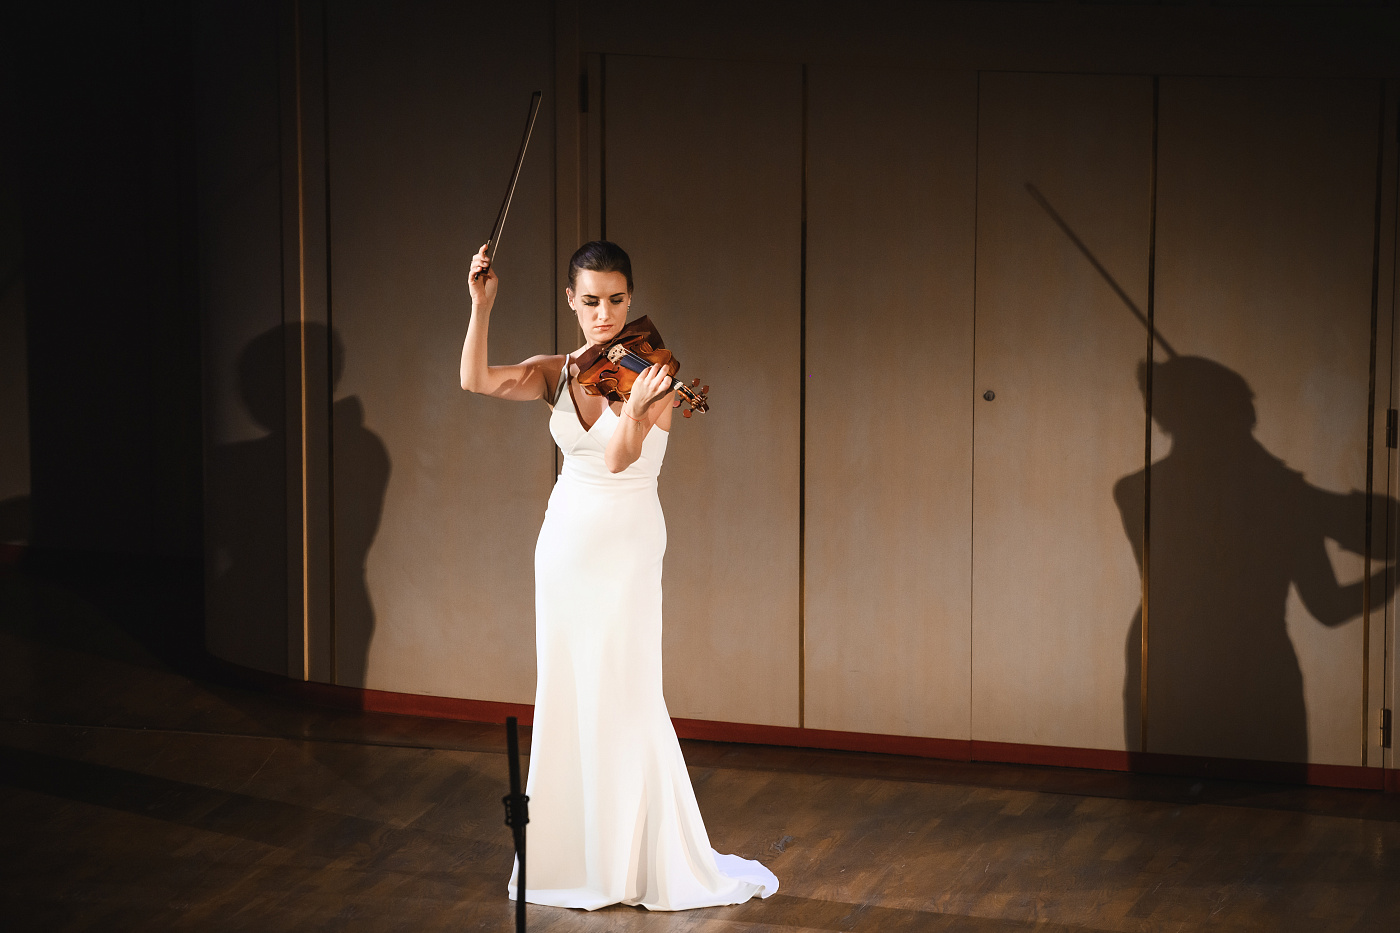 A Violin Recital of Olga Volkova